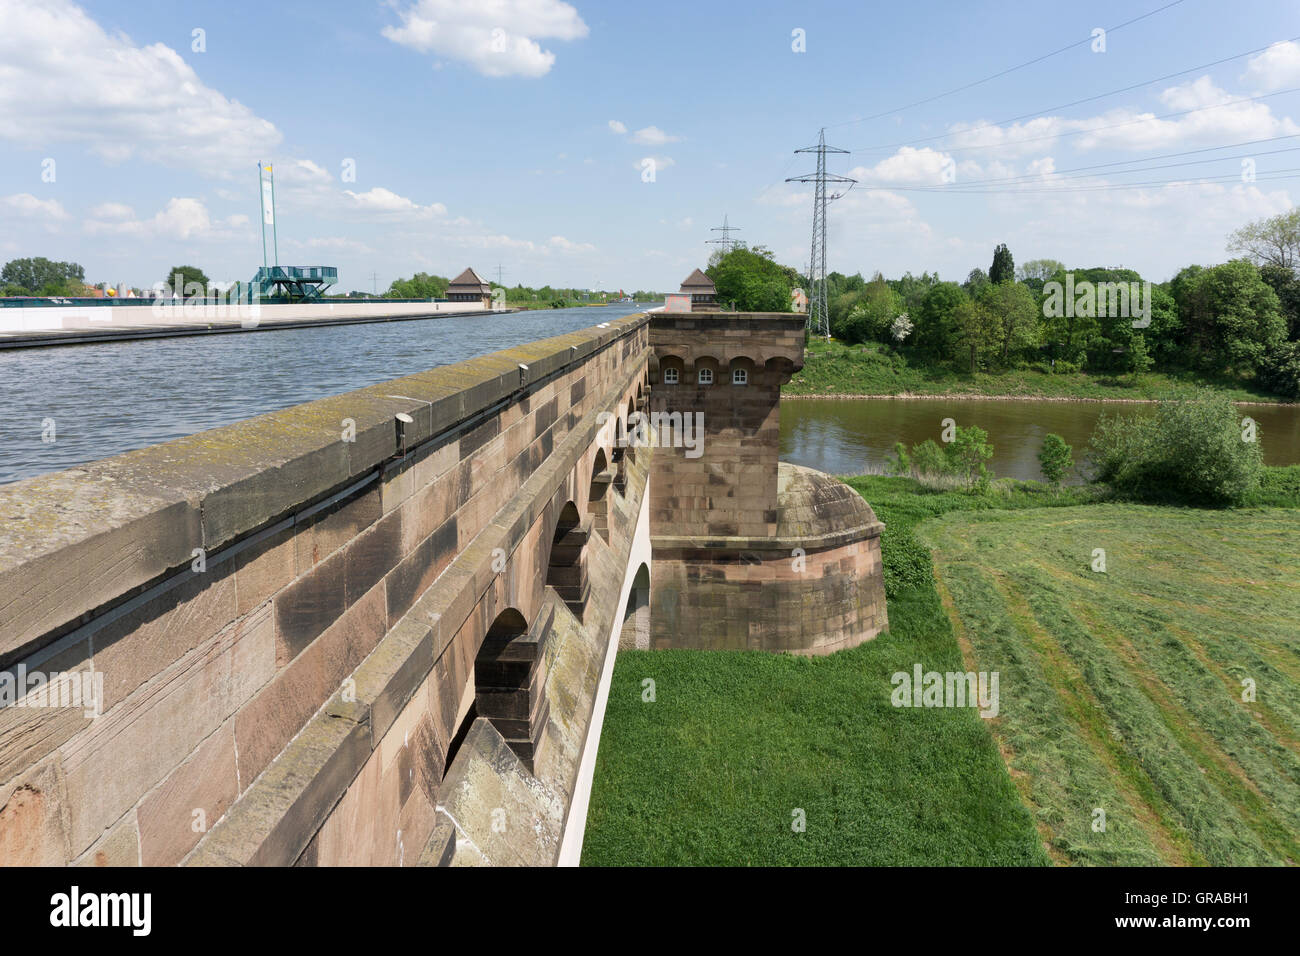 Minden Aqueduct, Wasserstraßenkreuz Minden, Minden, North Rhine-Westphalia, Germany, Euope Stock Photo